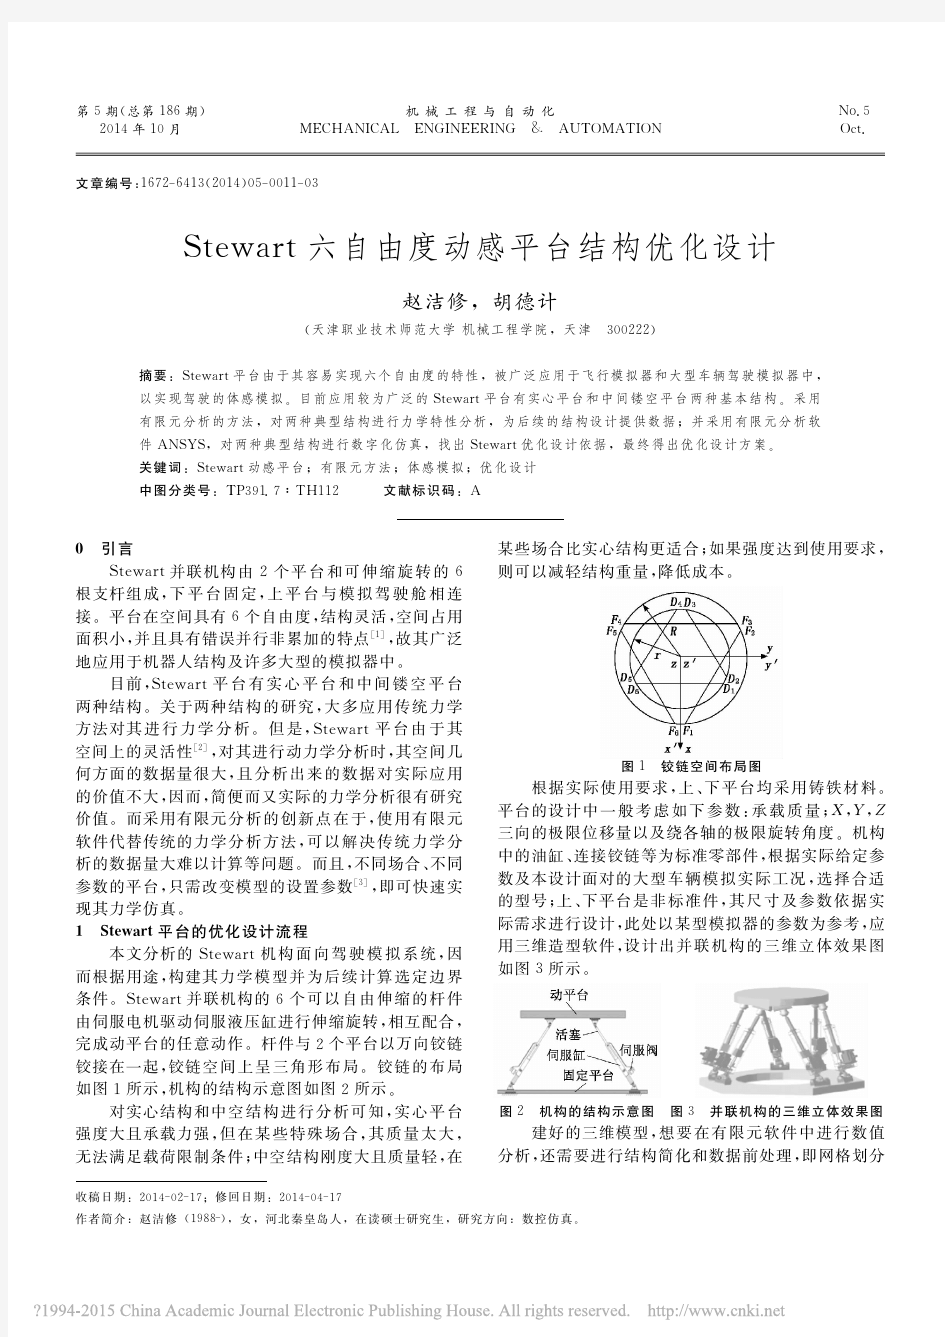 Stewart六自由度动感平台结构优化设计_赵洁修